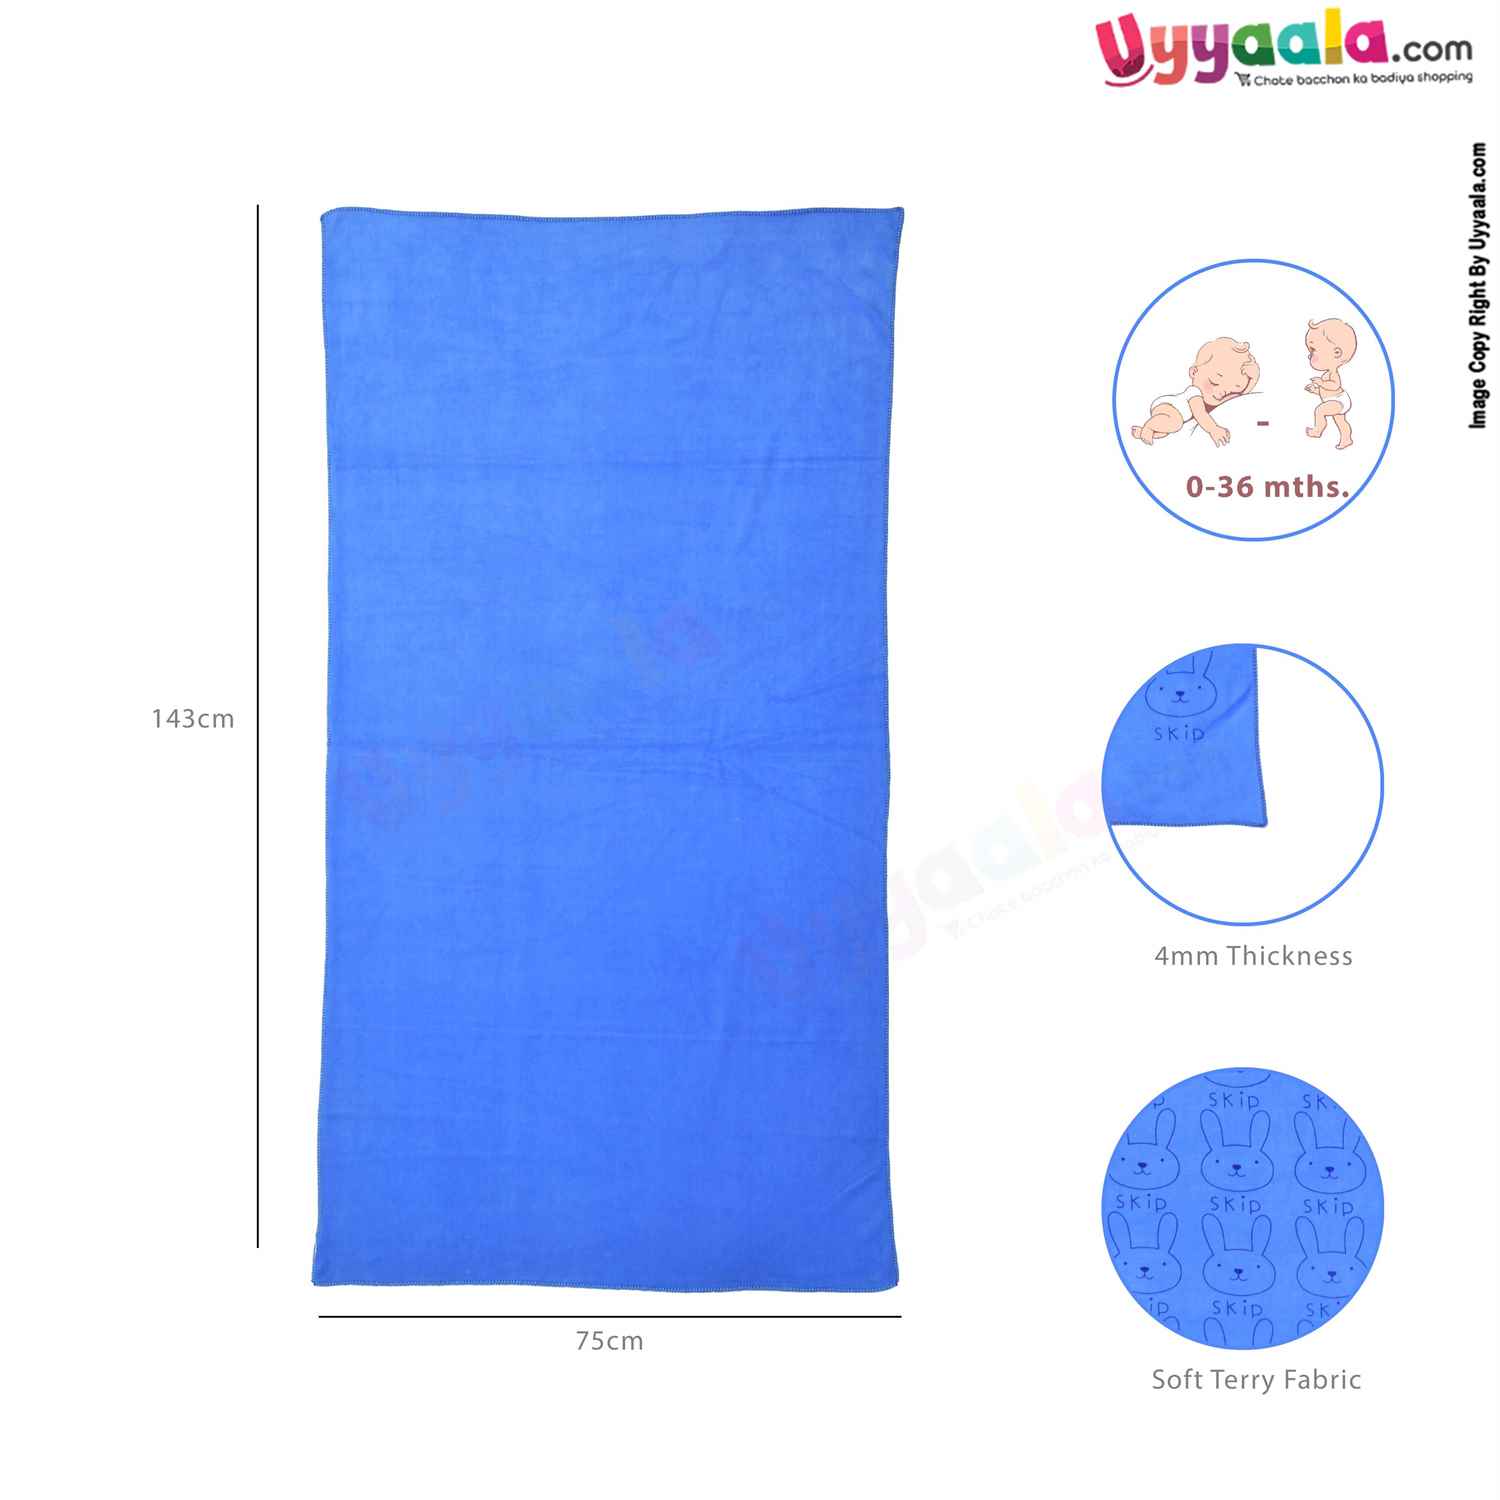 Soft Terry Bath Towel Premium with Rabbit Print for Babies 0-36m Age, Size (143*75cm)- Blue